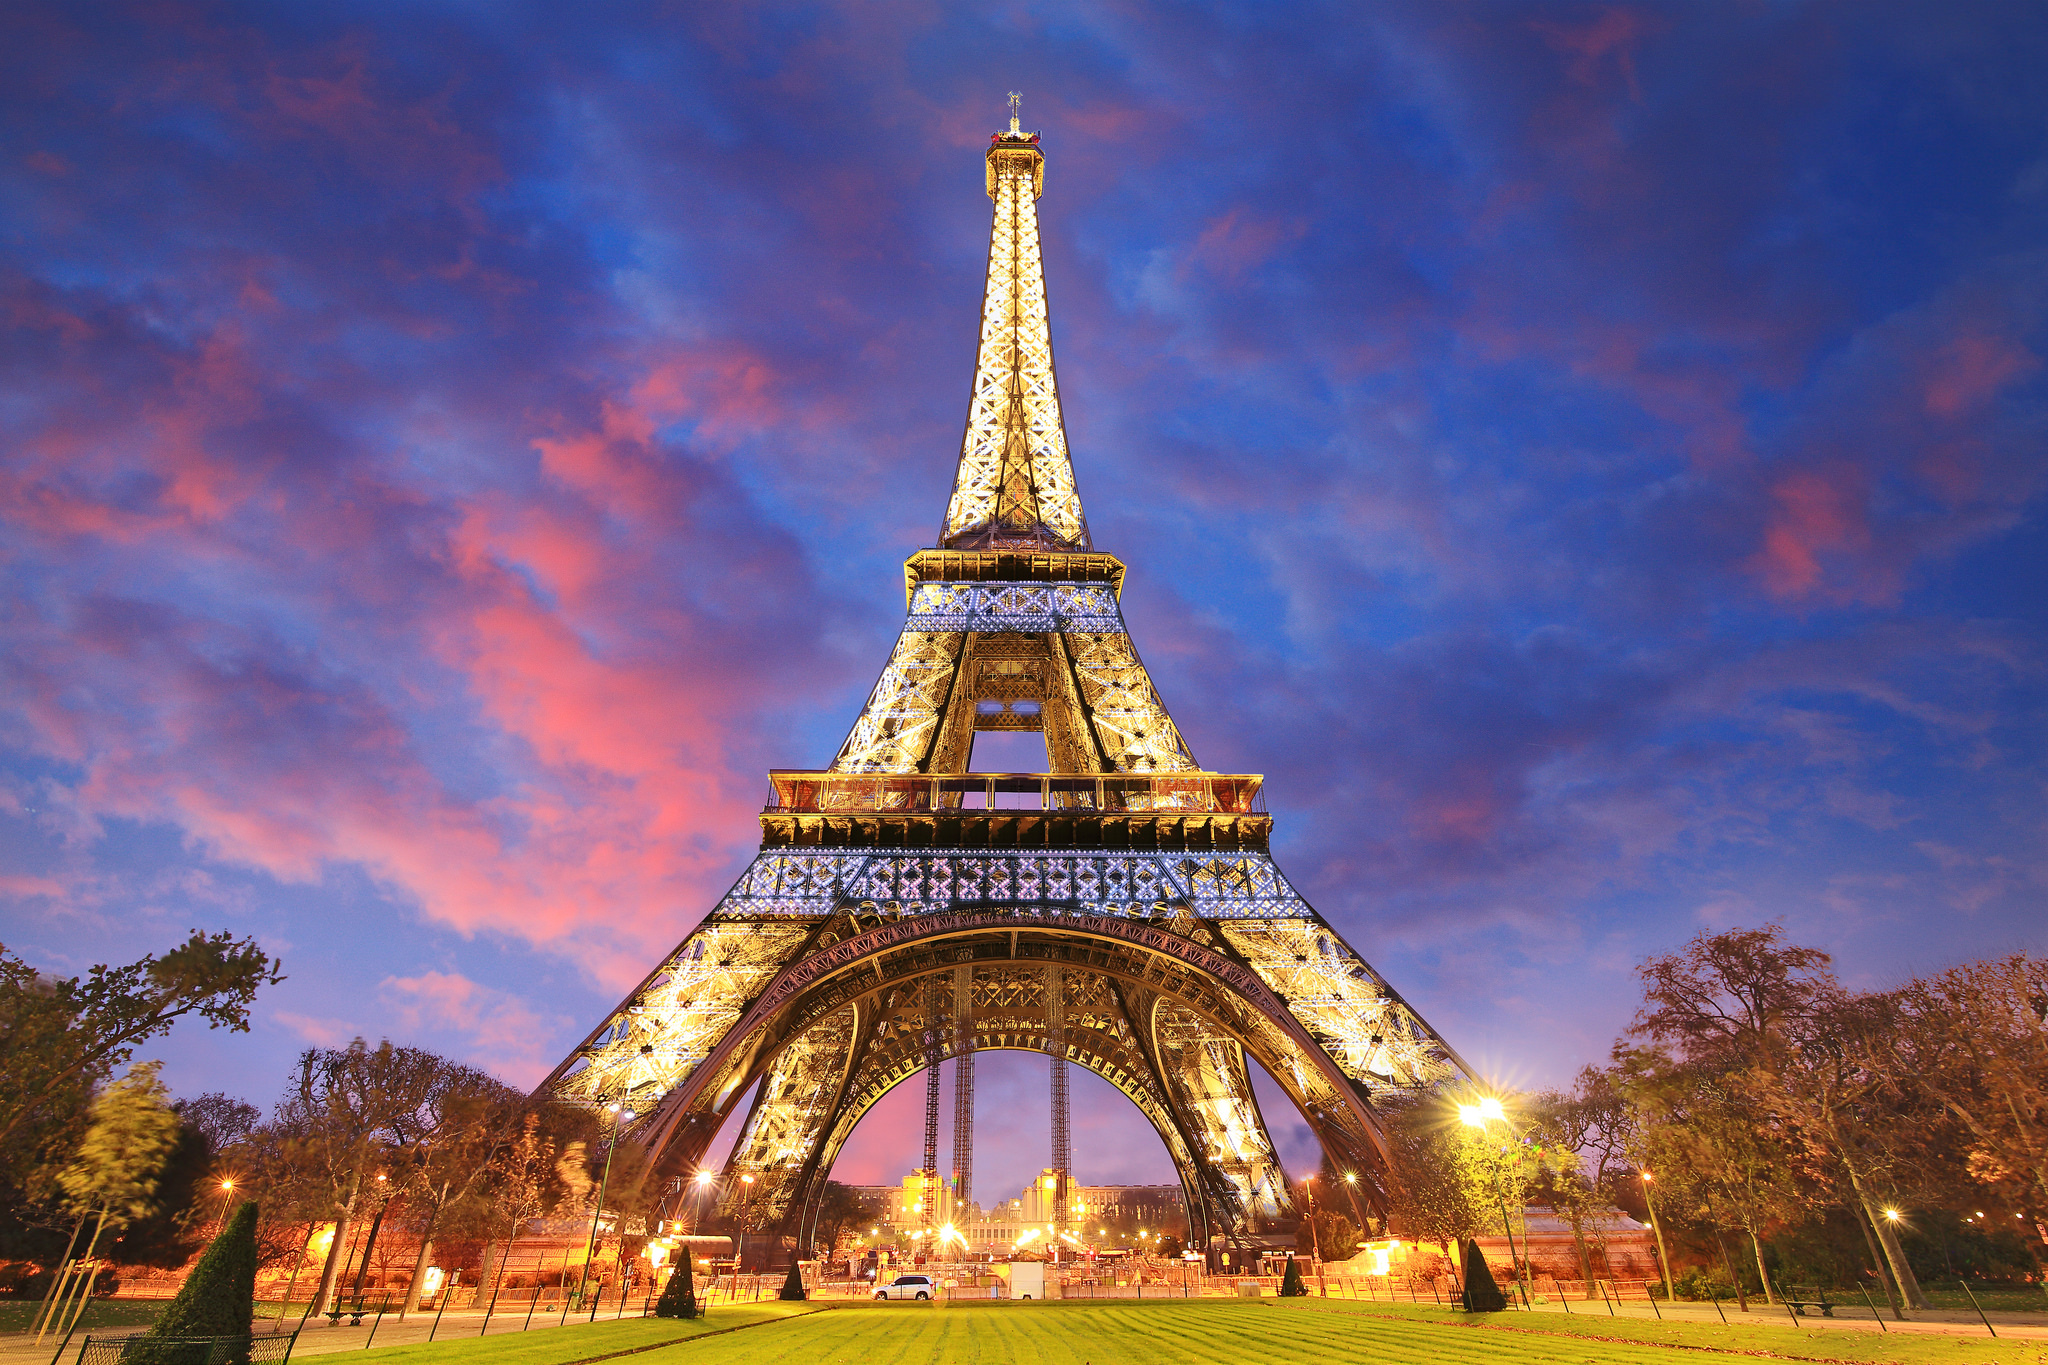 Tổng Hợp 50+ Hình Ảnh Tháp Eiffel Đẹp, Lộng Lấy, Hùng Vĩ Nhất 33